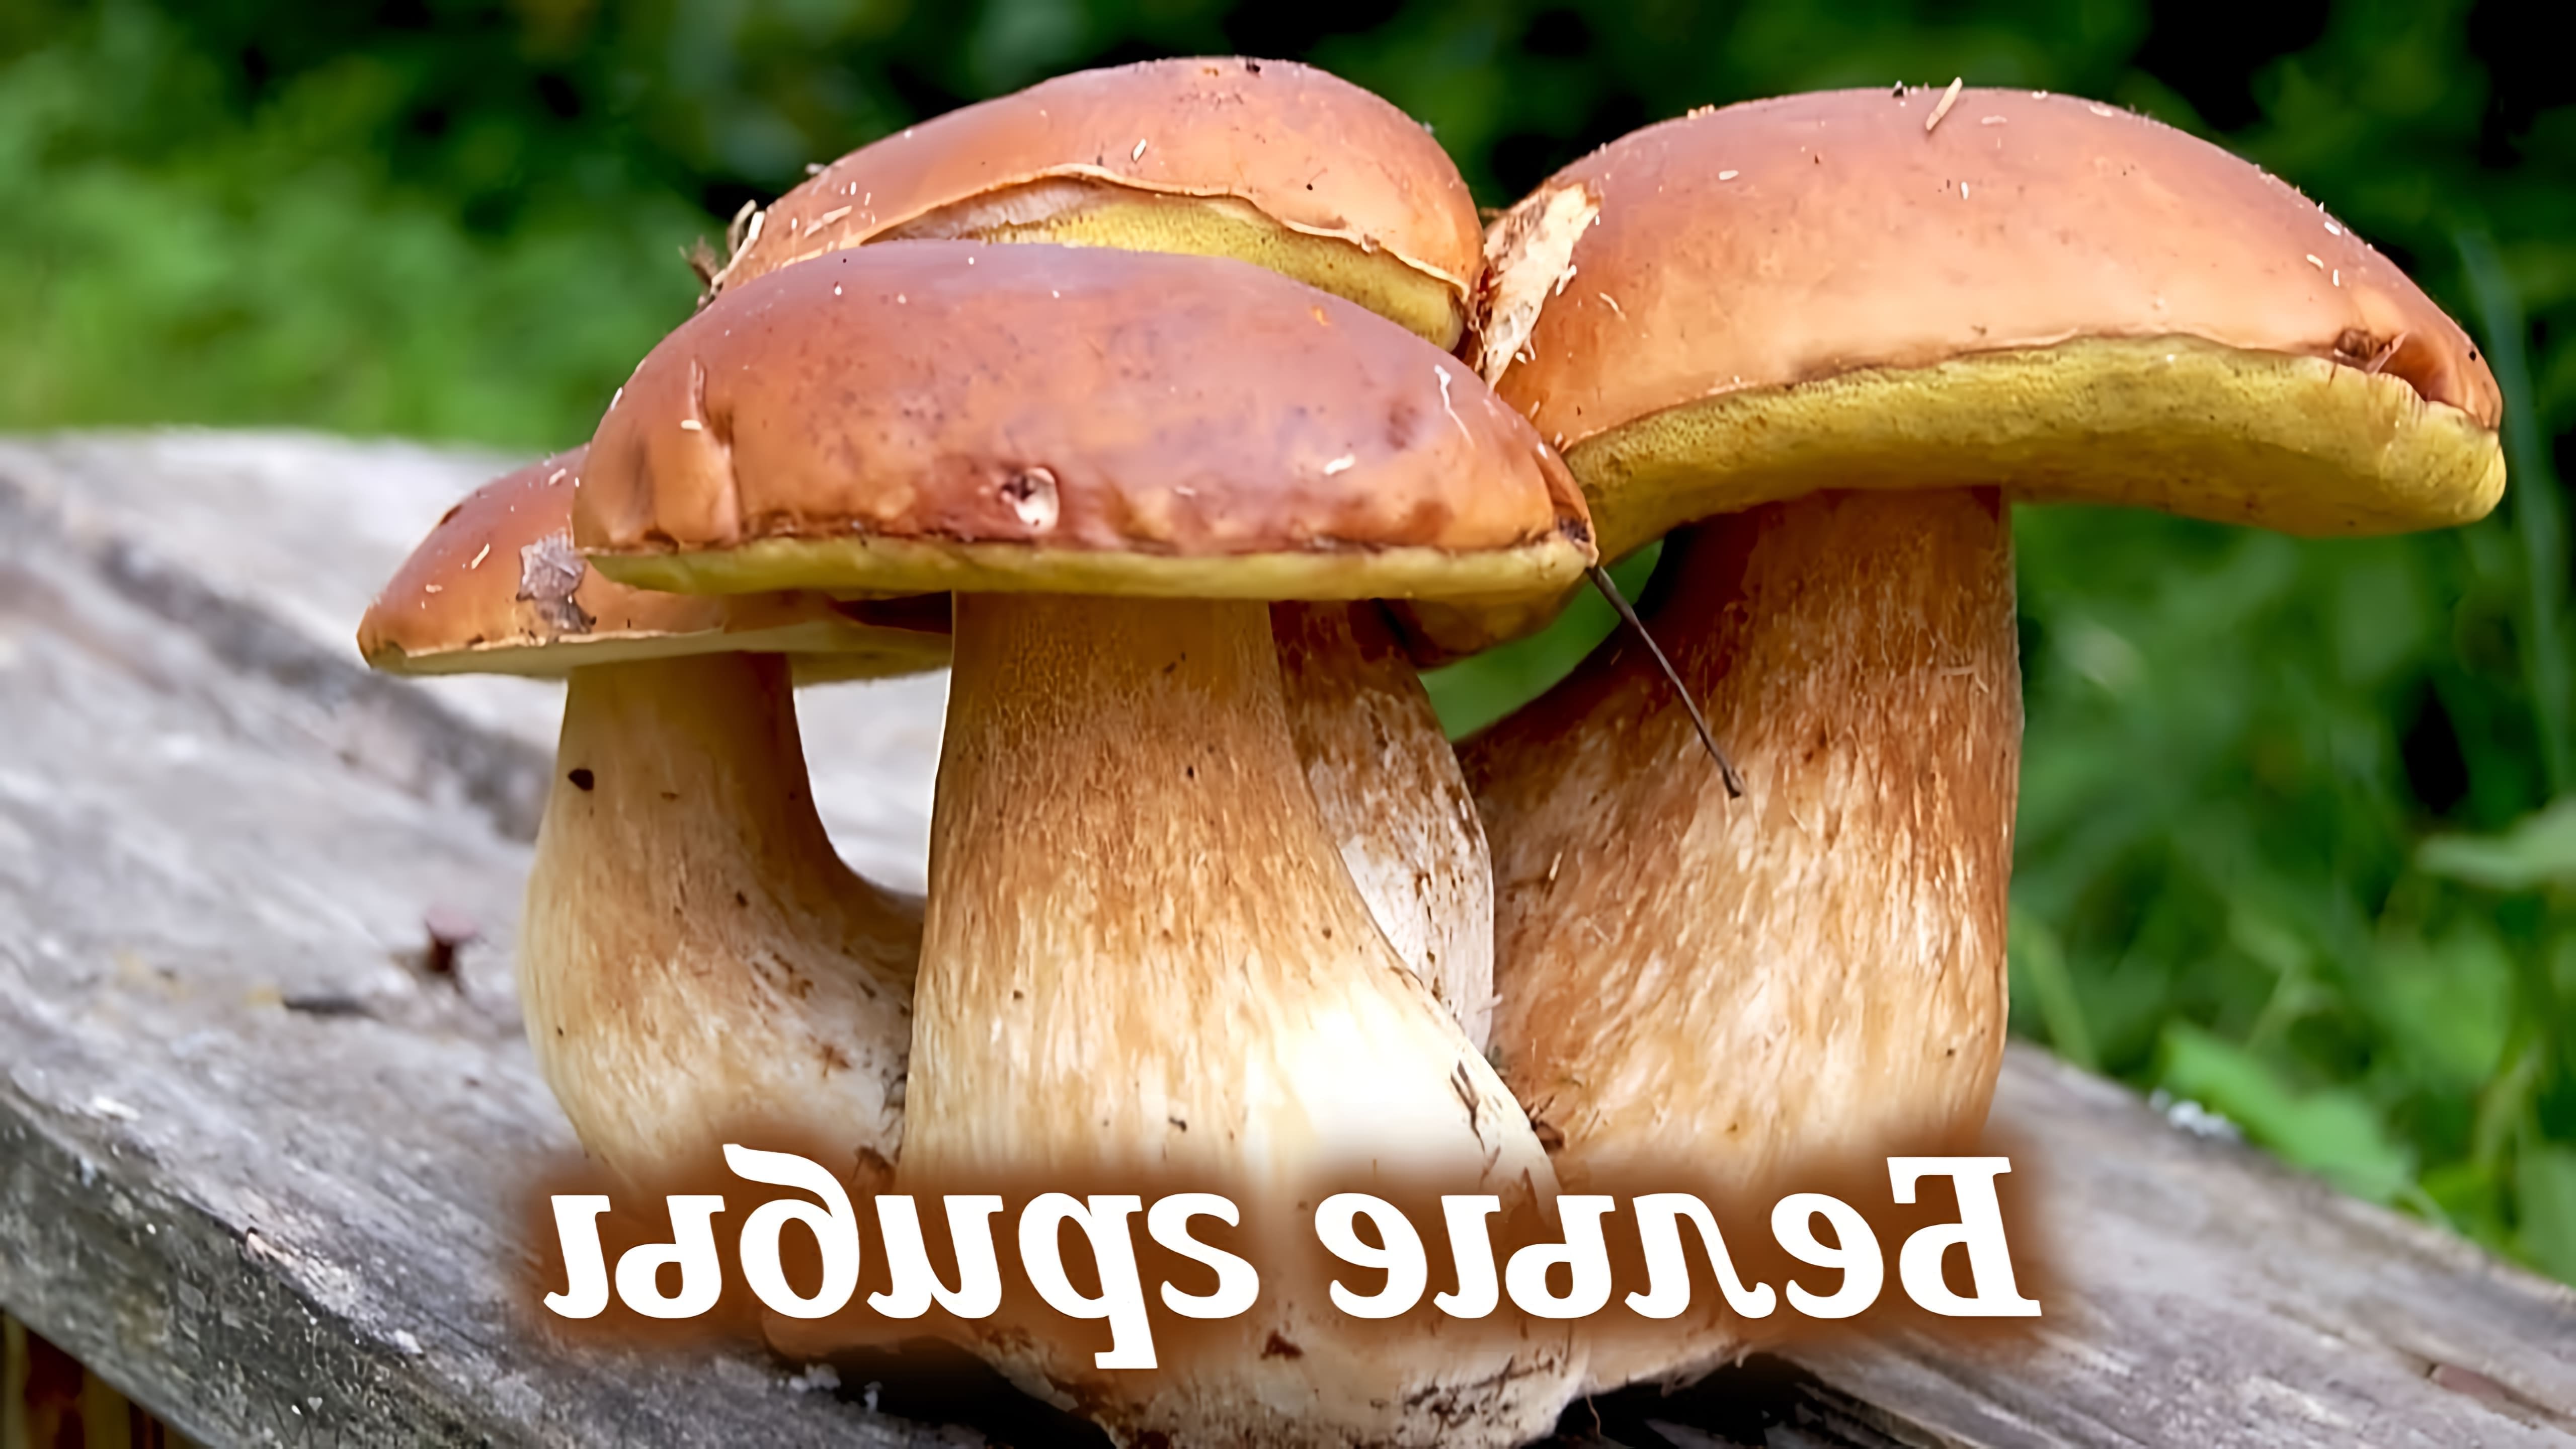 В этом видео рассказывается о том, как и где собирать белые грибы, а также приводится рецепт вкуснейшего блюда с белыми грибами